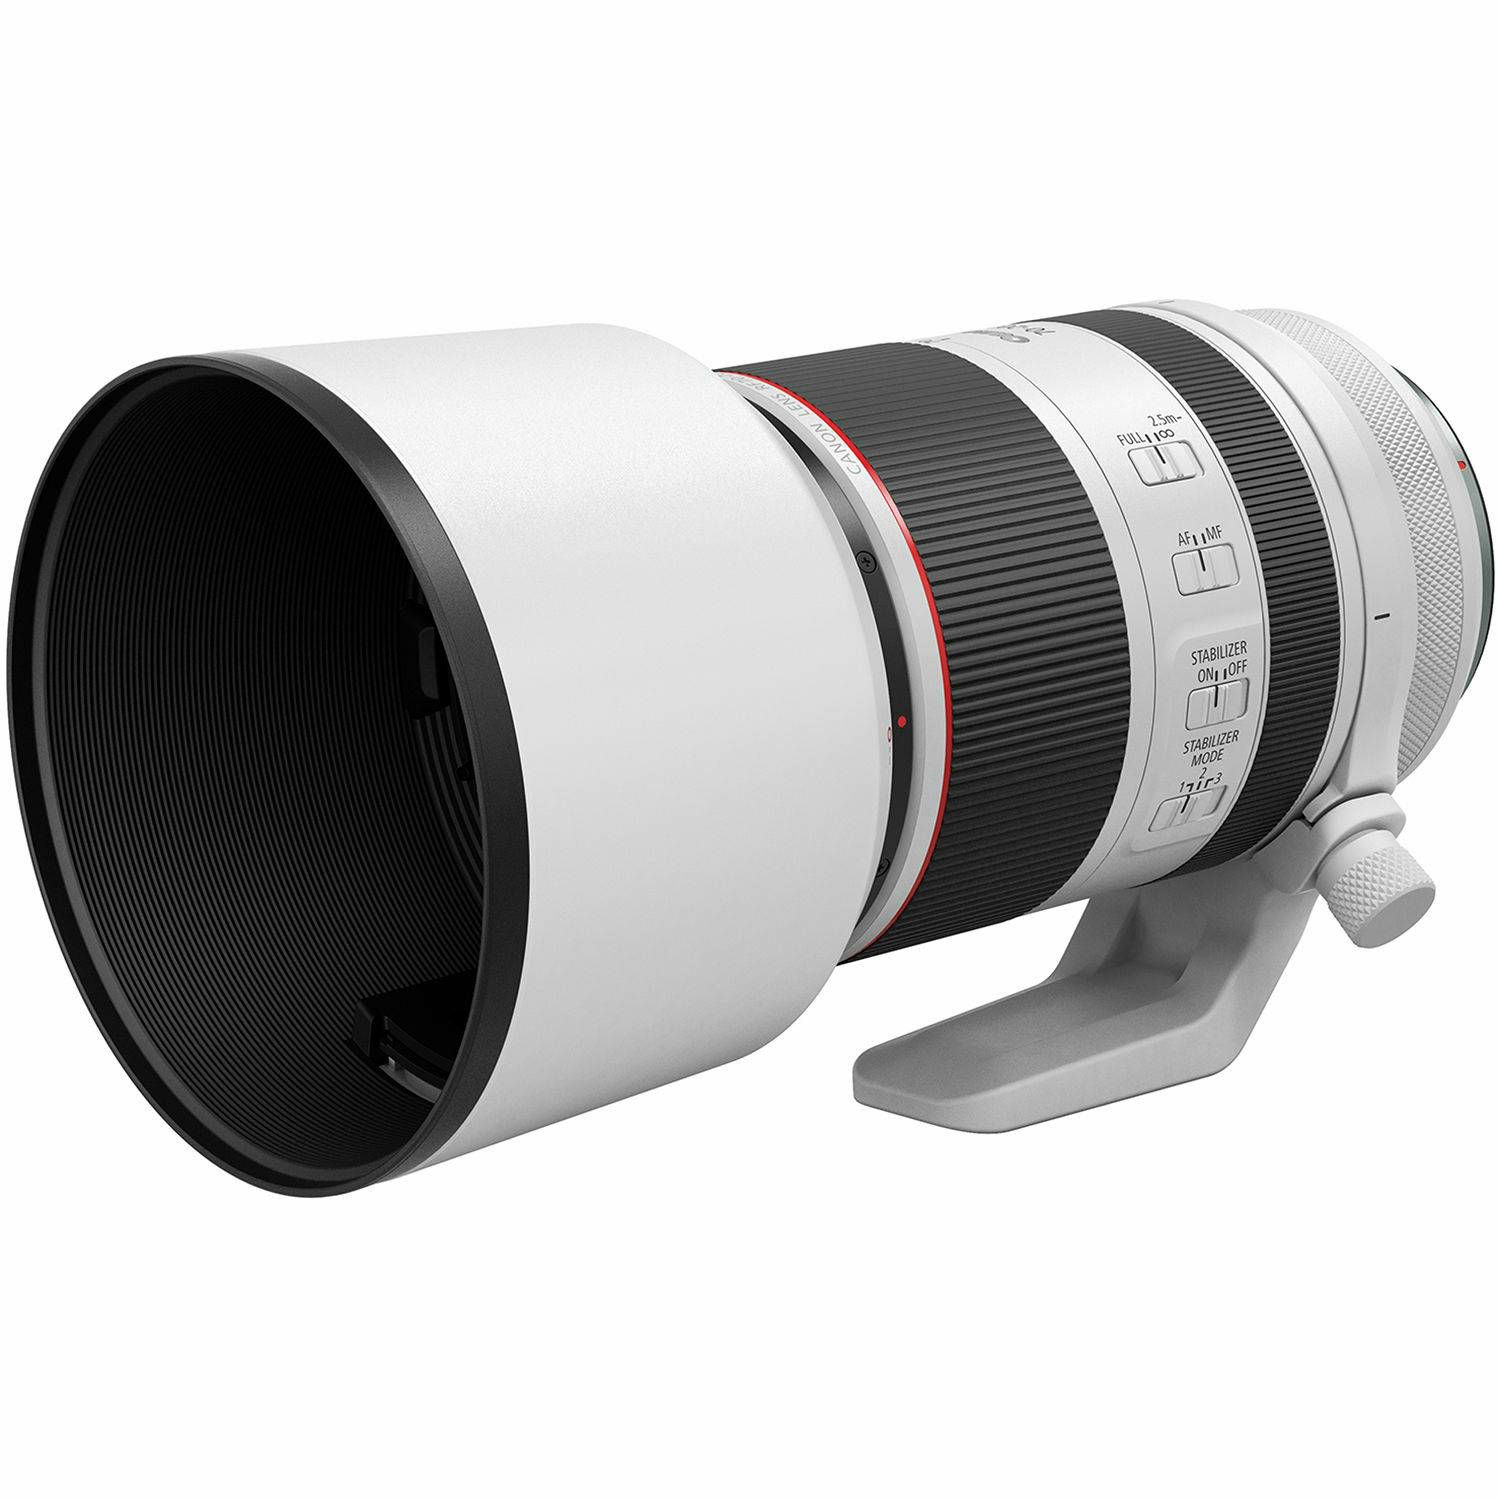 Canon RF 70-200mm f/2.8 L IS USM telefoto objektiv